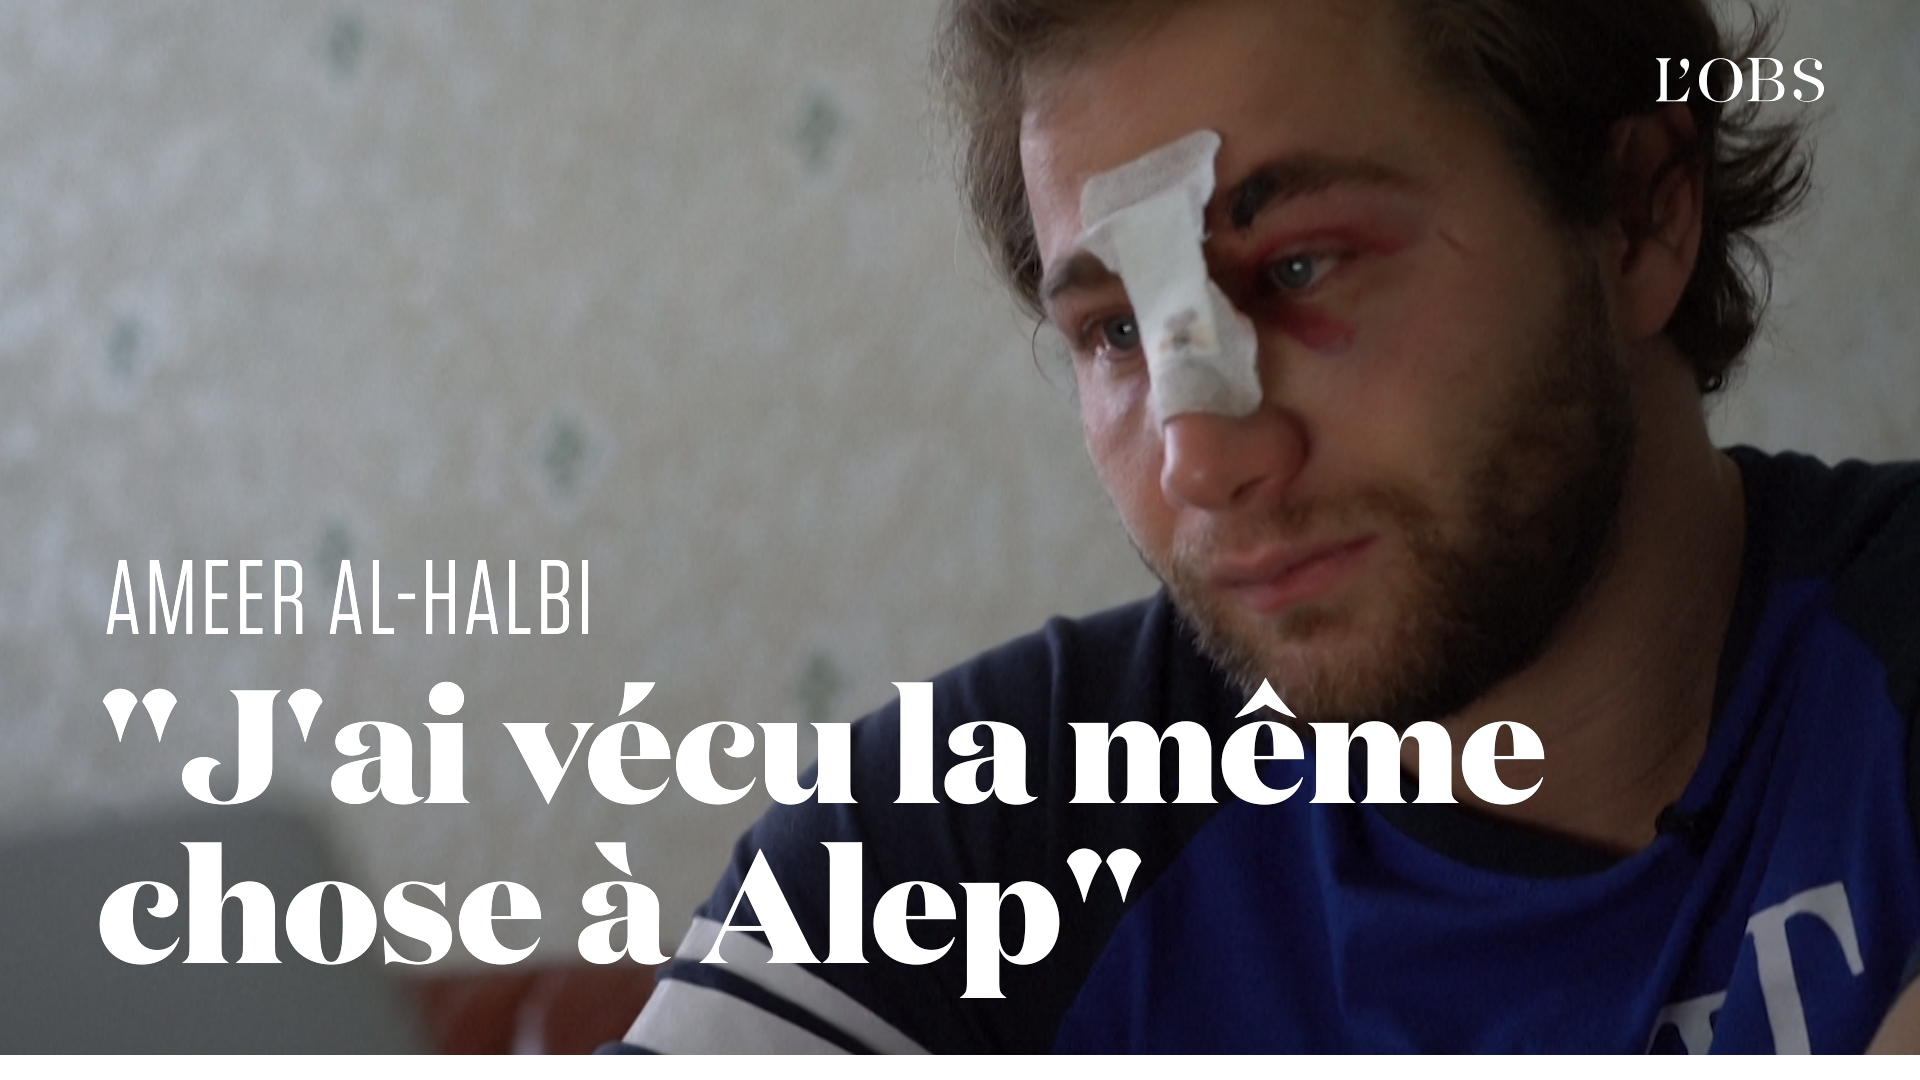 Le photojournaliste syrien Ameer al-Halbi blessé par la police à Paris témoigne